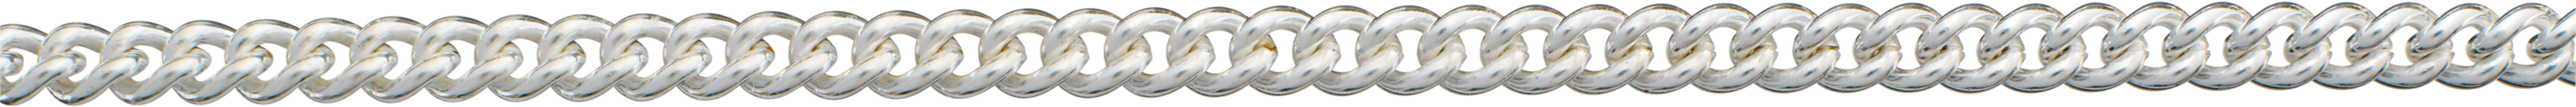 ronde schakel ketting zilver 925/- 3,50mm, draad dikte 1,00mm